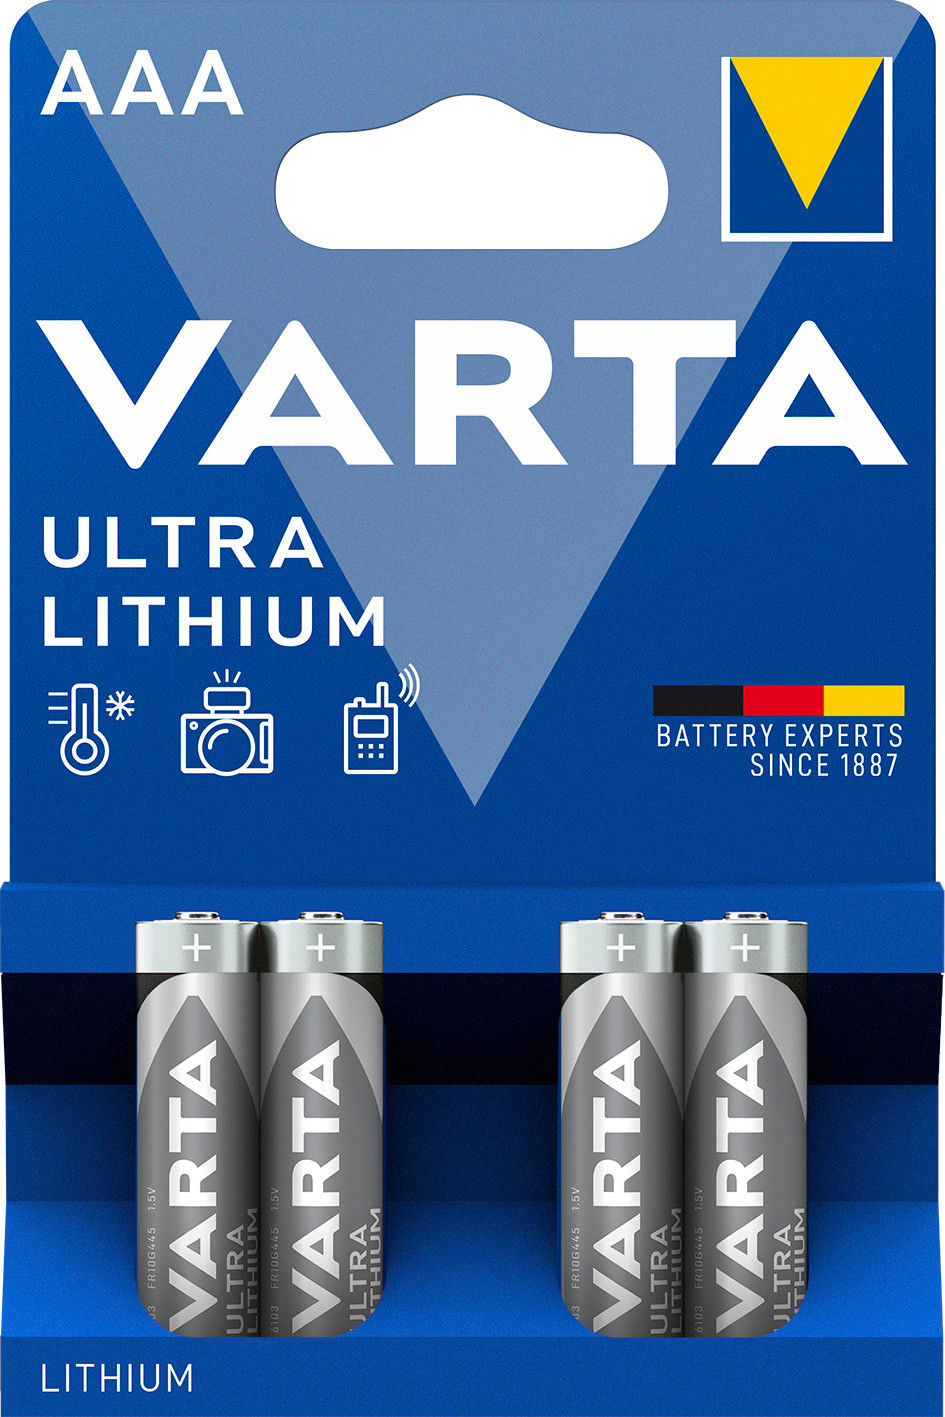 Varta AAA lithium 4x